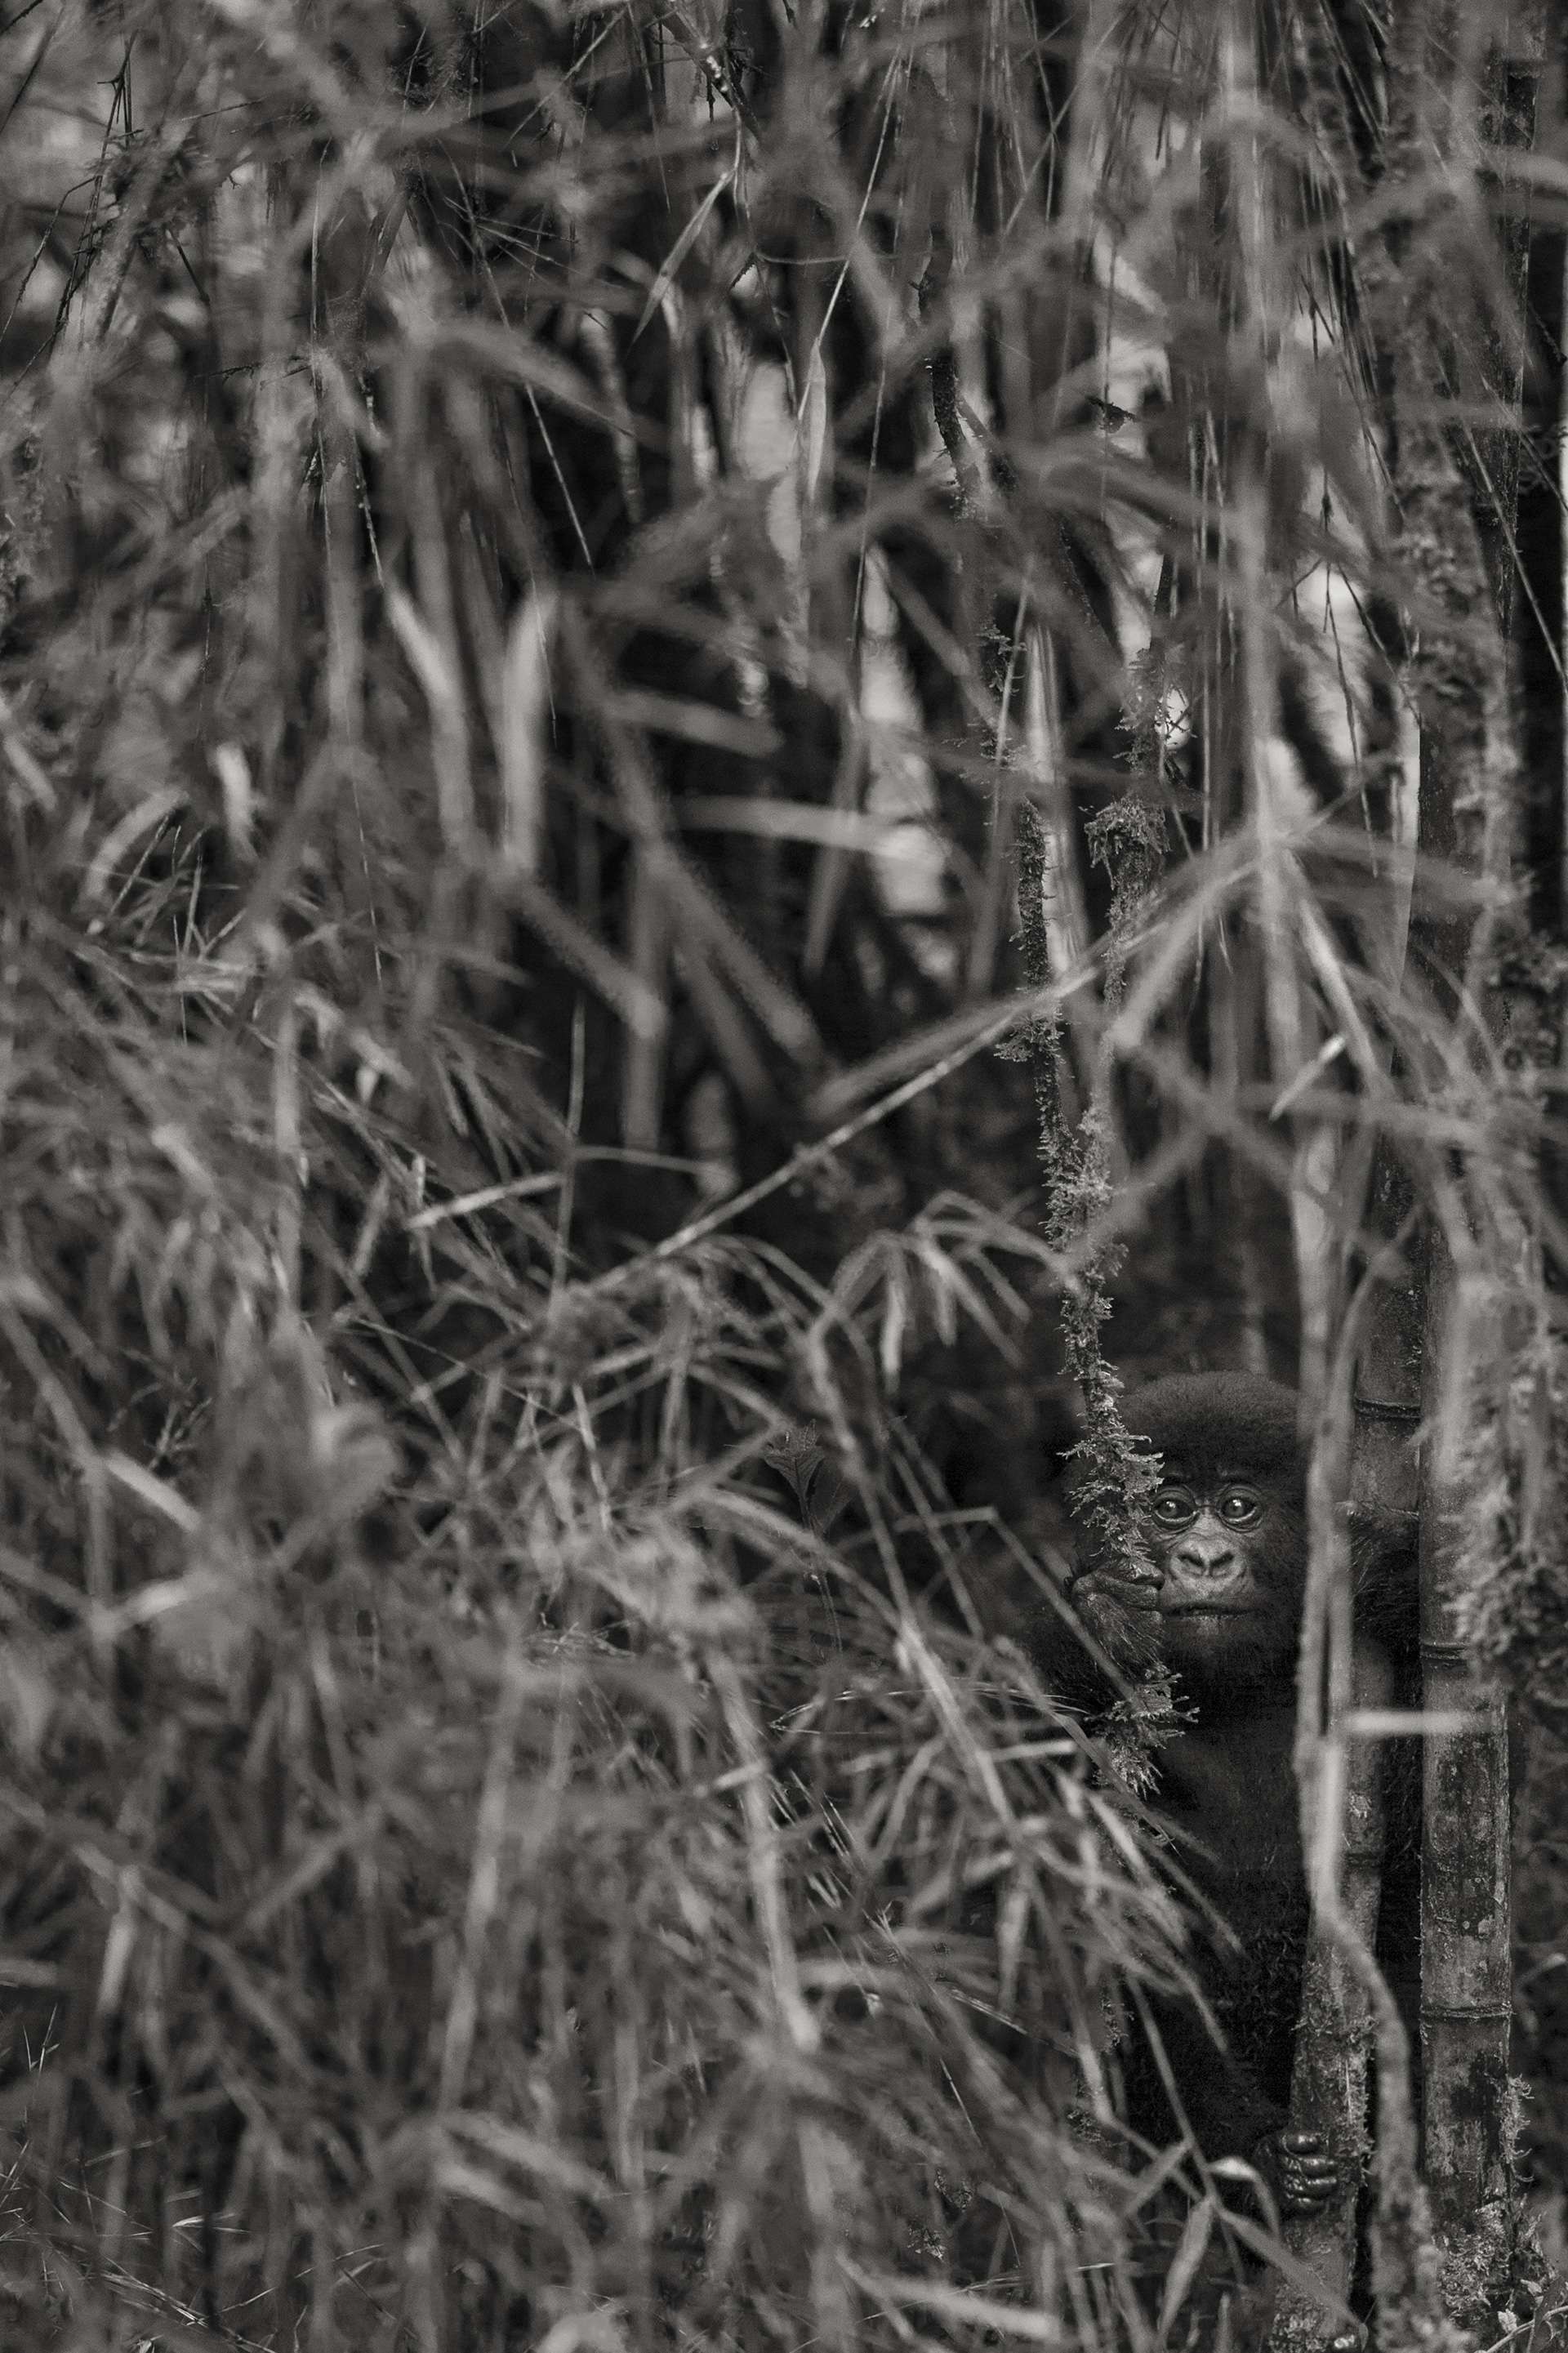 Photographie de Gilles Martin d'un gorille de montagne du Rwanda